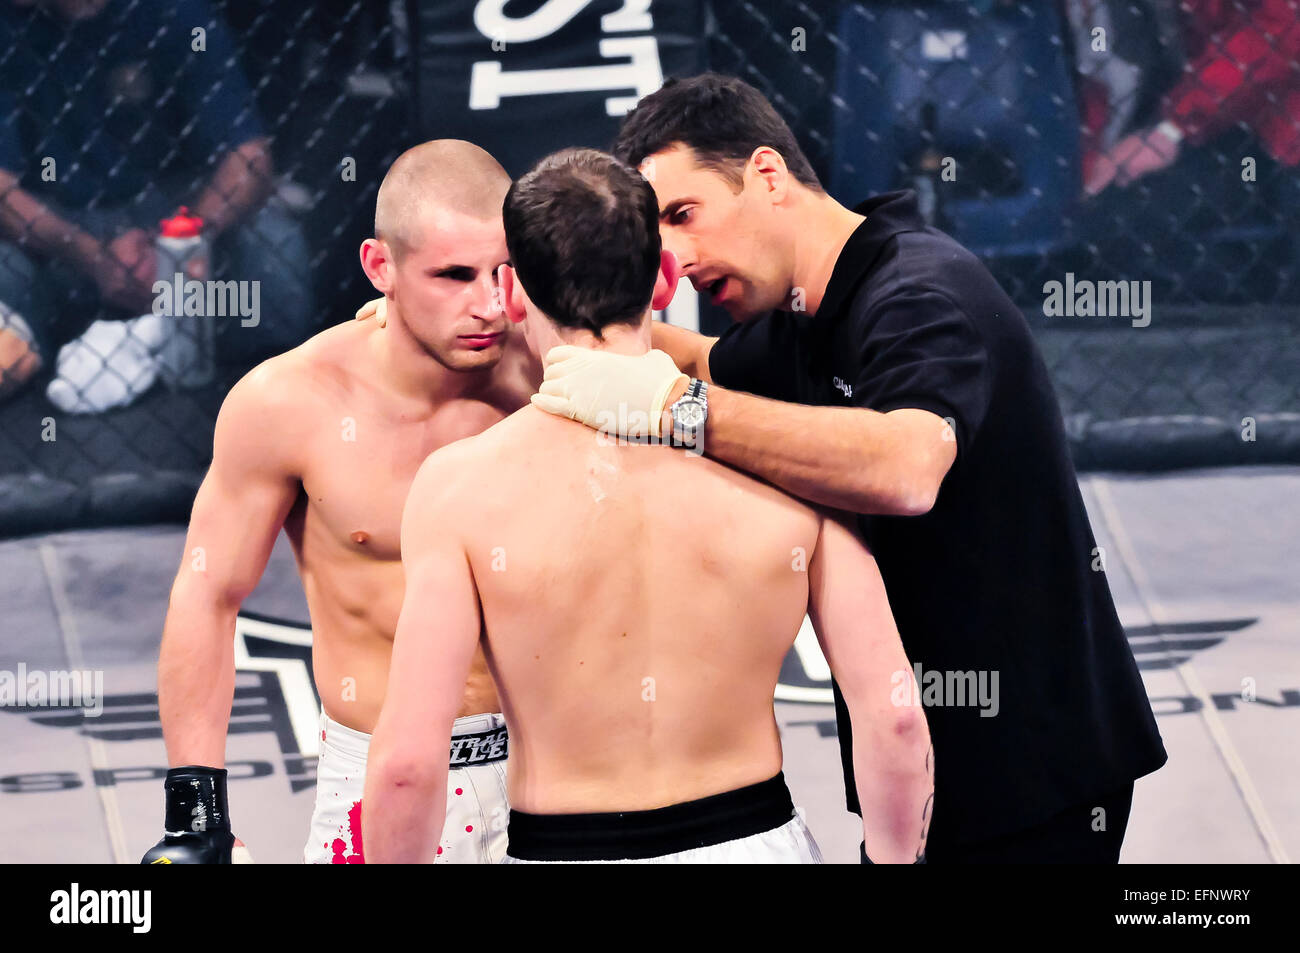 MMA: règles, cage, dangerosité Tout comprendre à ce sport de combat en  plein essor